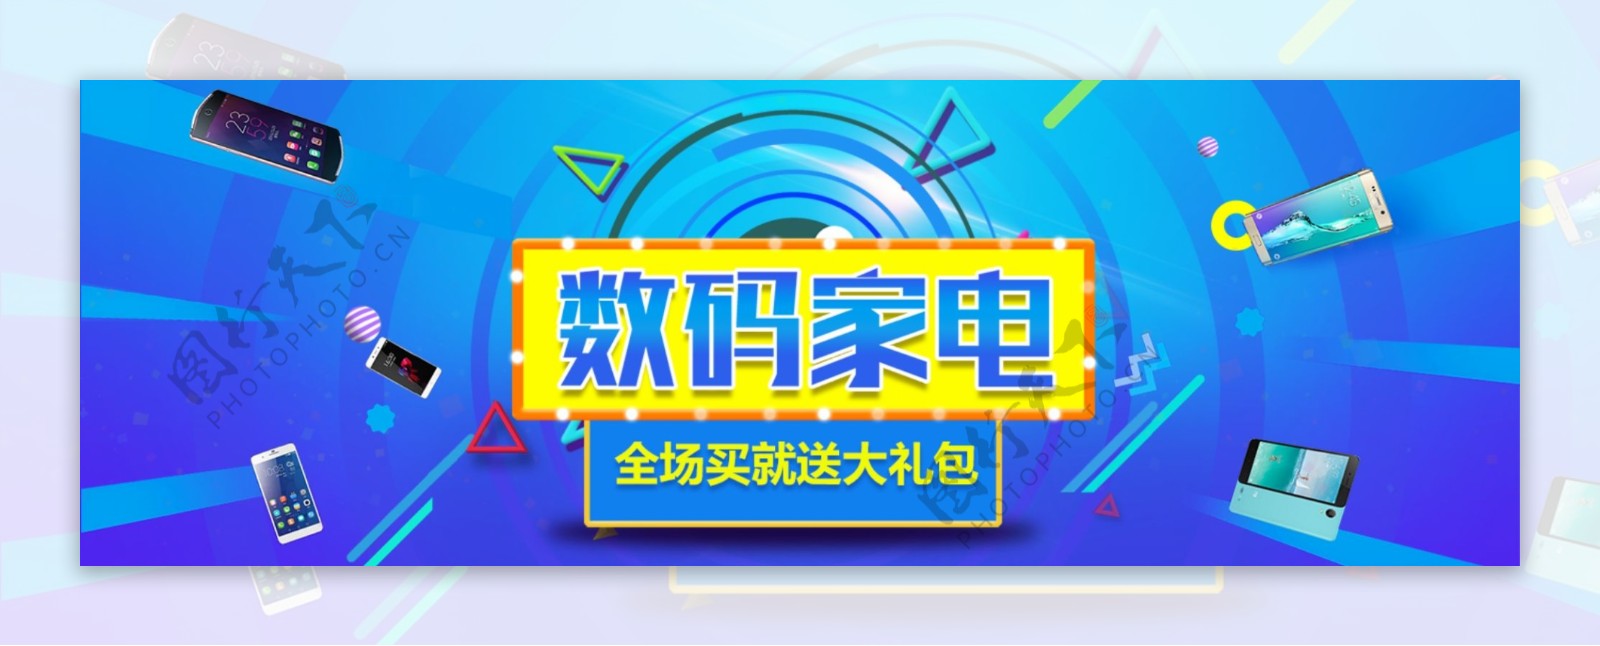 蓝色科技手机数码家电促销电商banner淘宝海报99